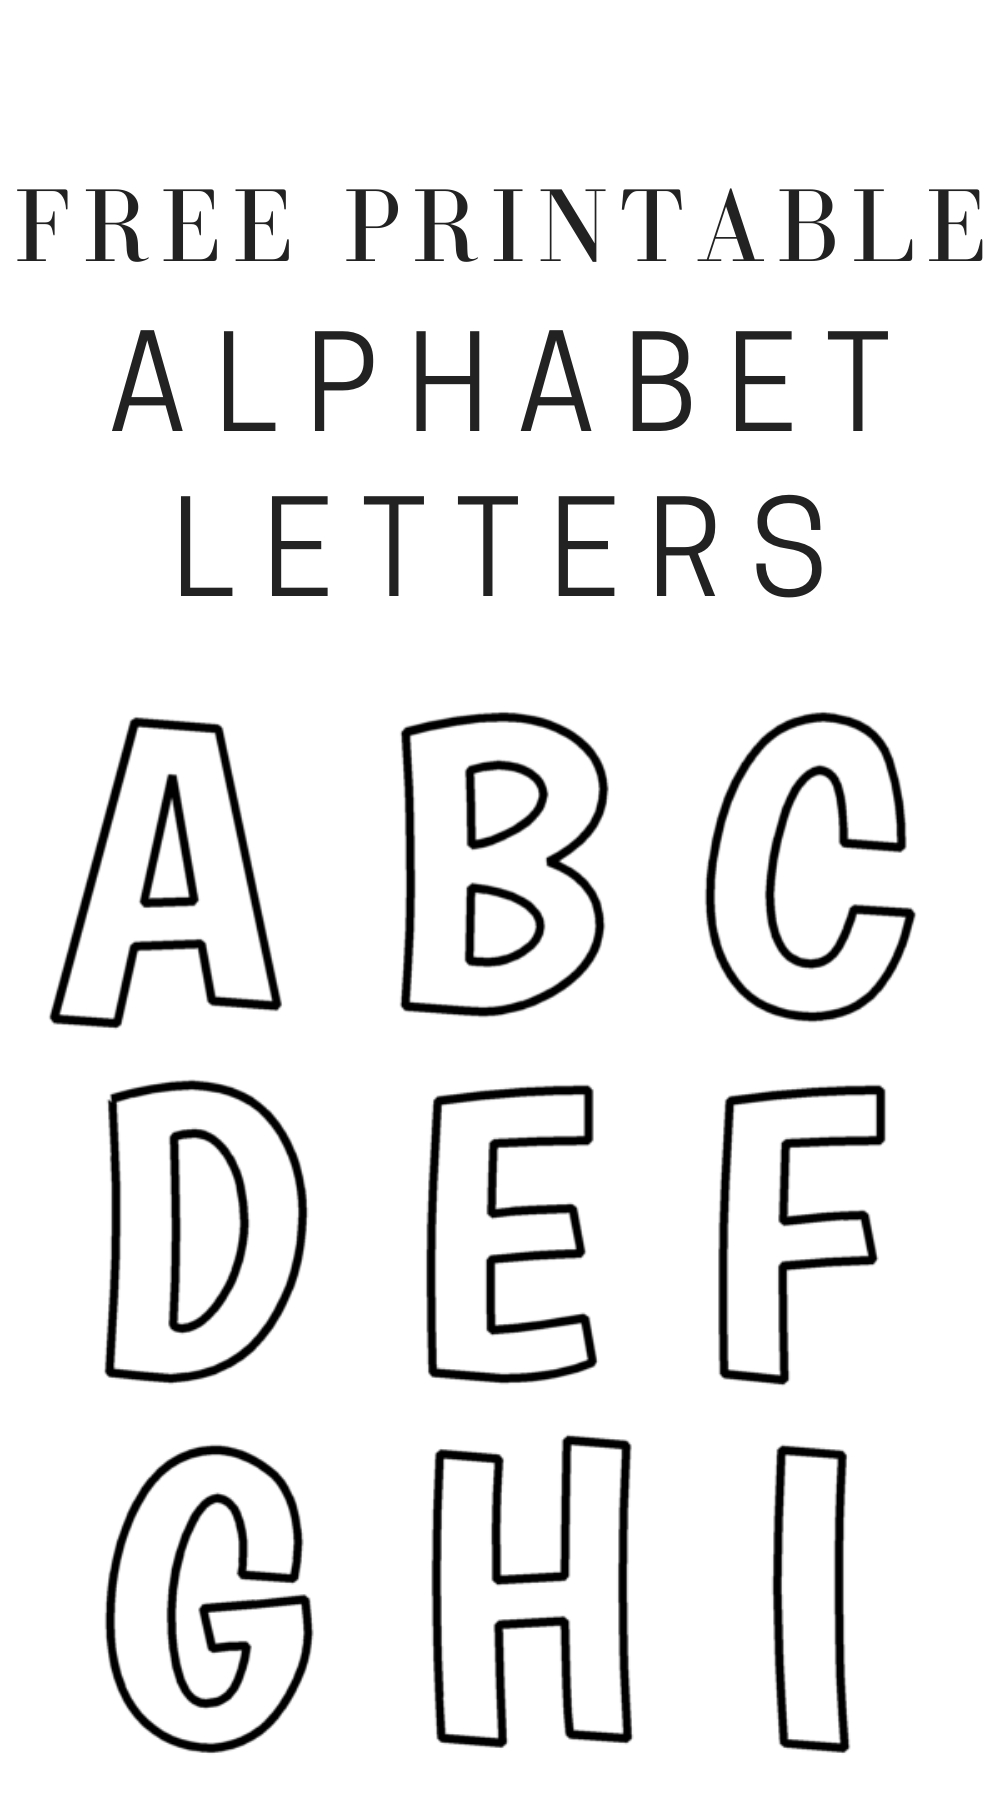 Printable Free Alphabet Templates | Free Printable Alphabet intended for Free Printable Alphabet Templates